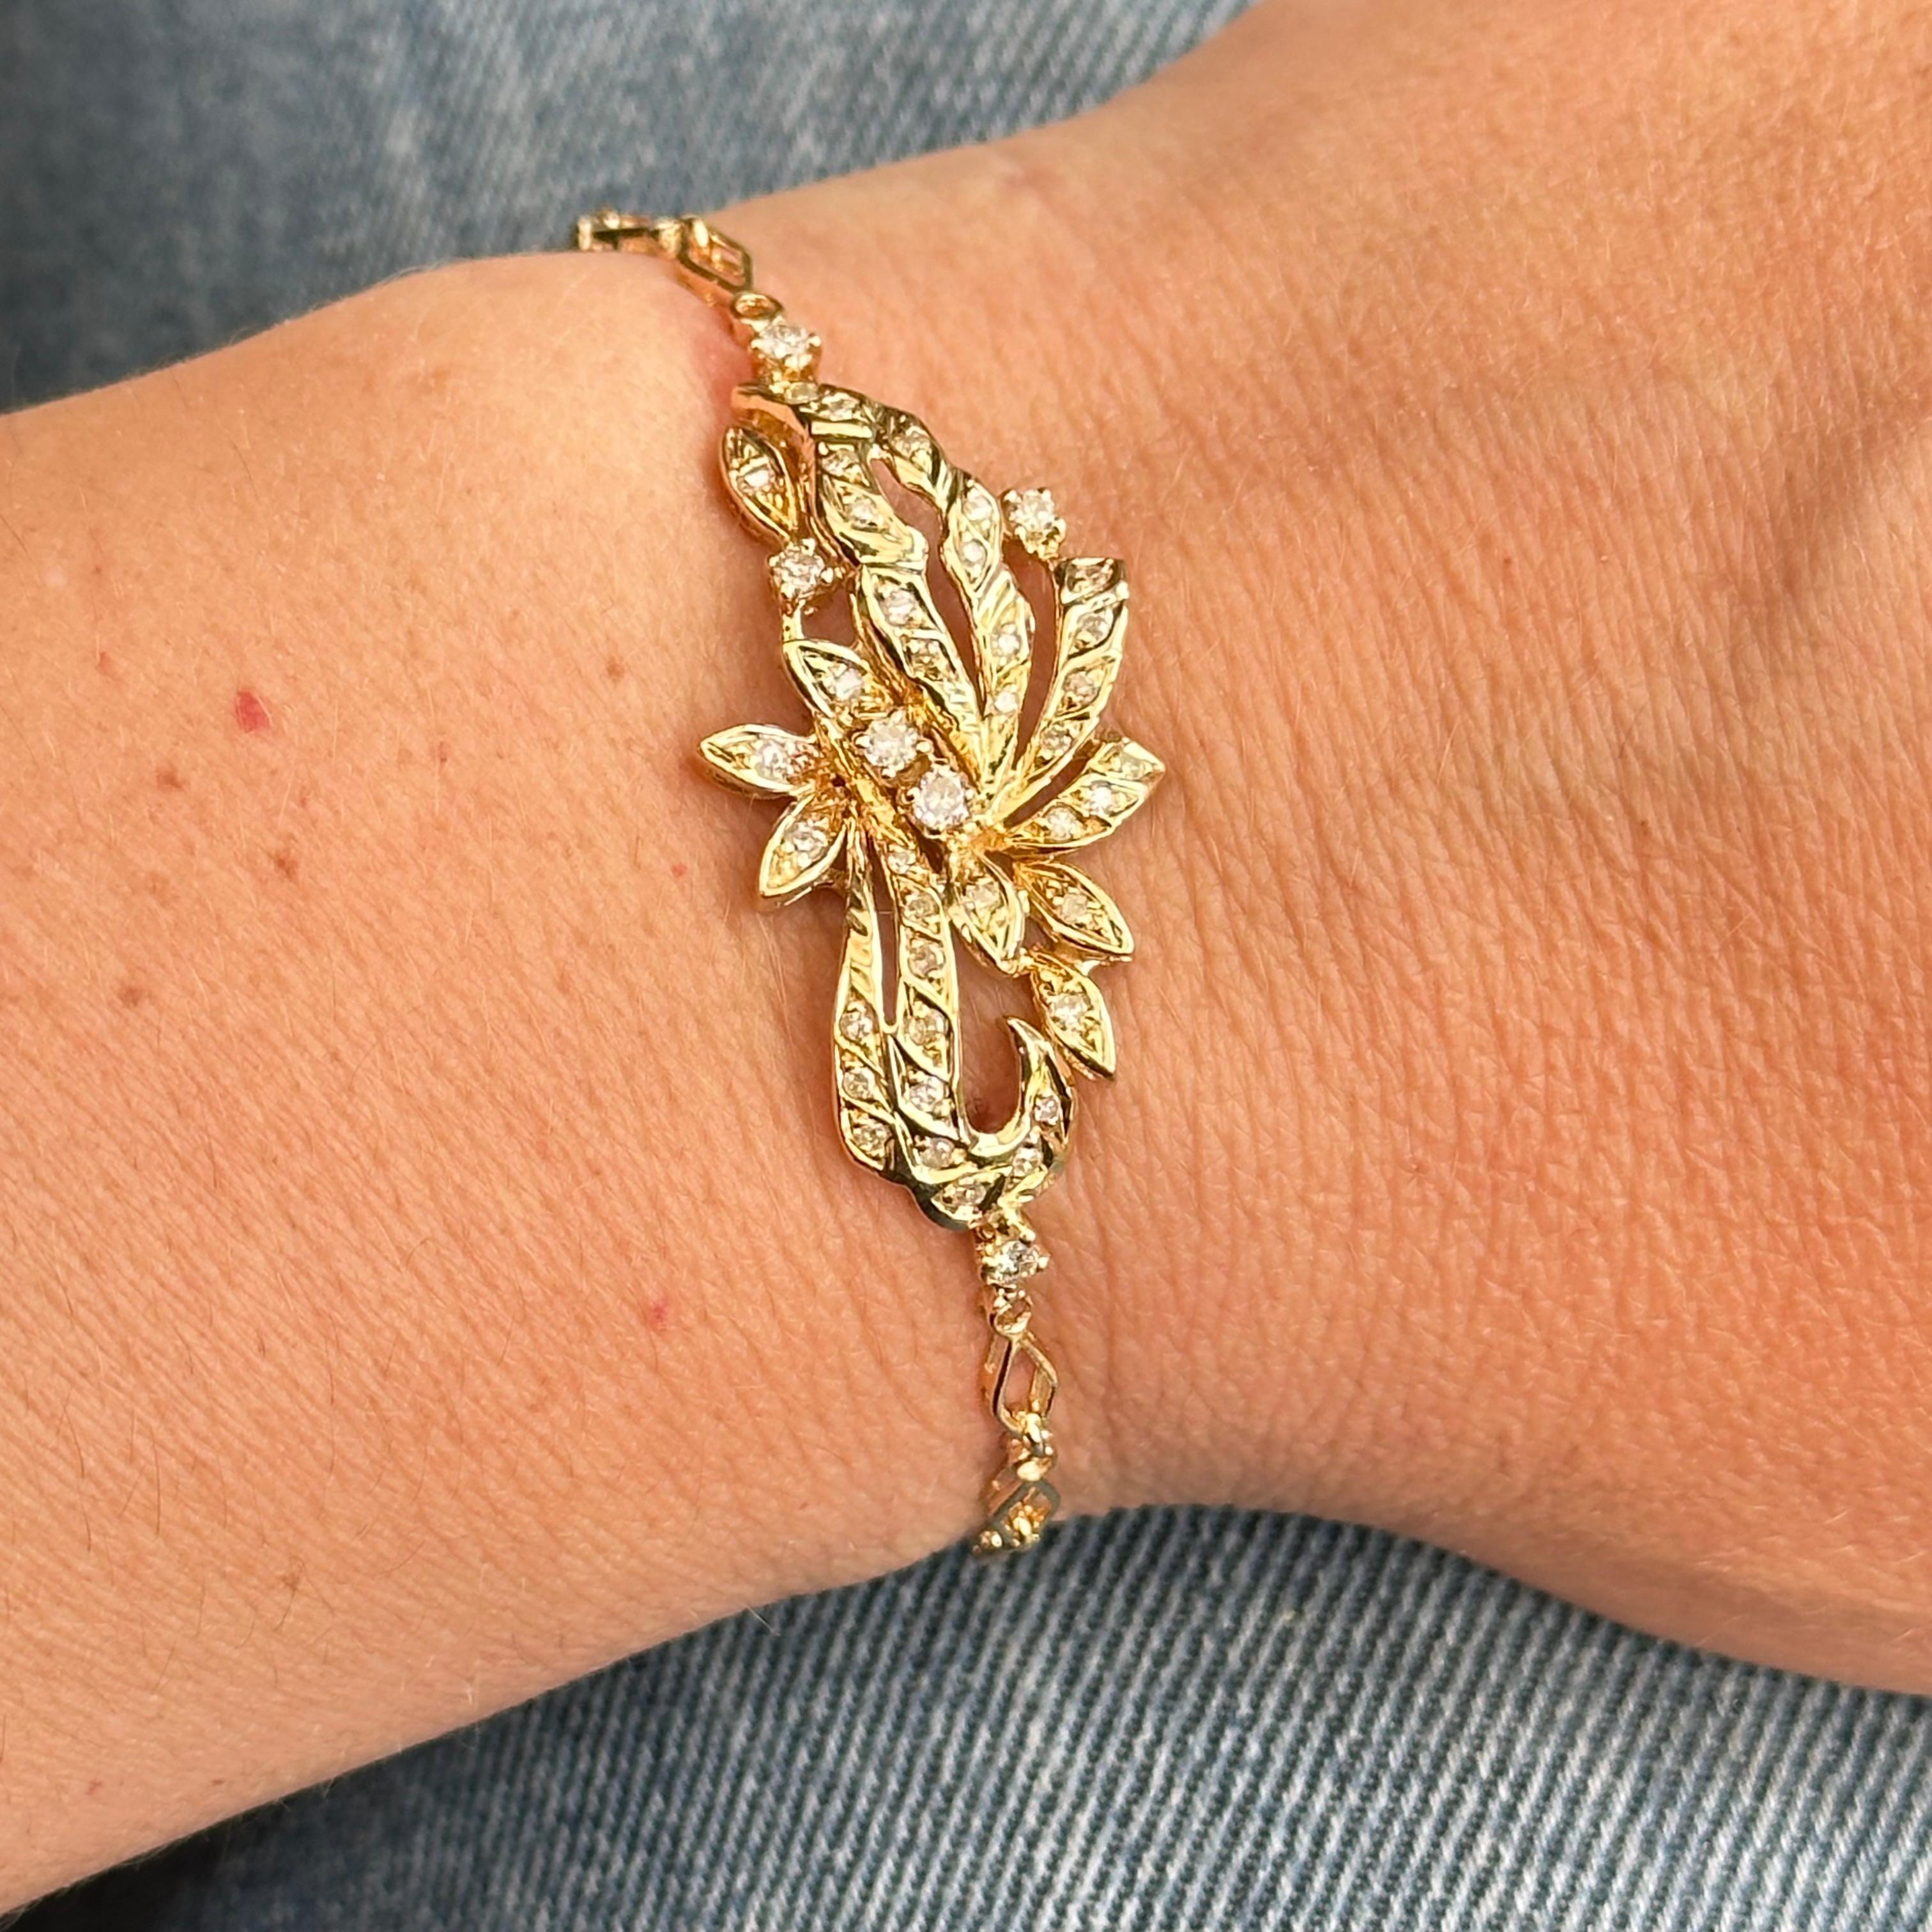 Découvrez ce magnifique bracelet motif floral en or 18 carats serti de diamants. Un bijou de luxe d'une pureté de 750 millièmes qui ajoutera une touche de glamour à votre poignet.

Avec un poids de 7,98 grammes et une longueur de 16,5 centimètres,